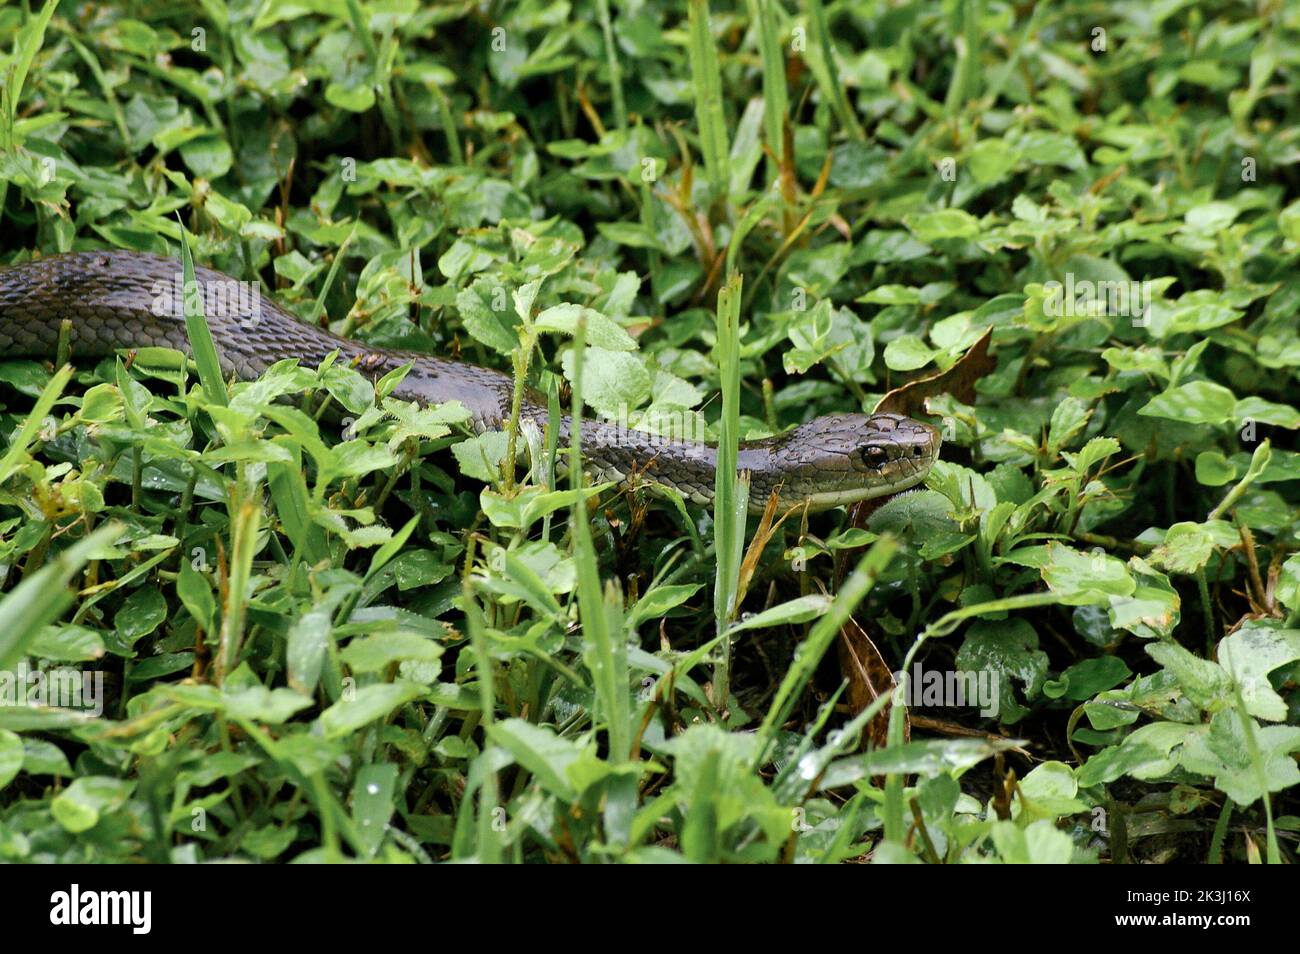 Serpent australien très venimeux à échelle brute, Tropidechis carinatus, glissant sur une couverture de sol verte. Queensland, Australie. Banque D'Images